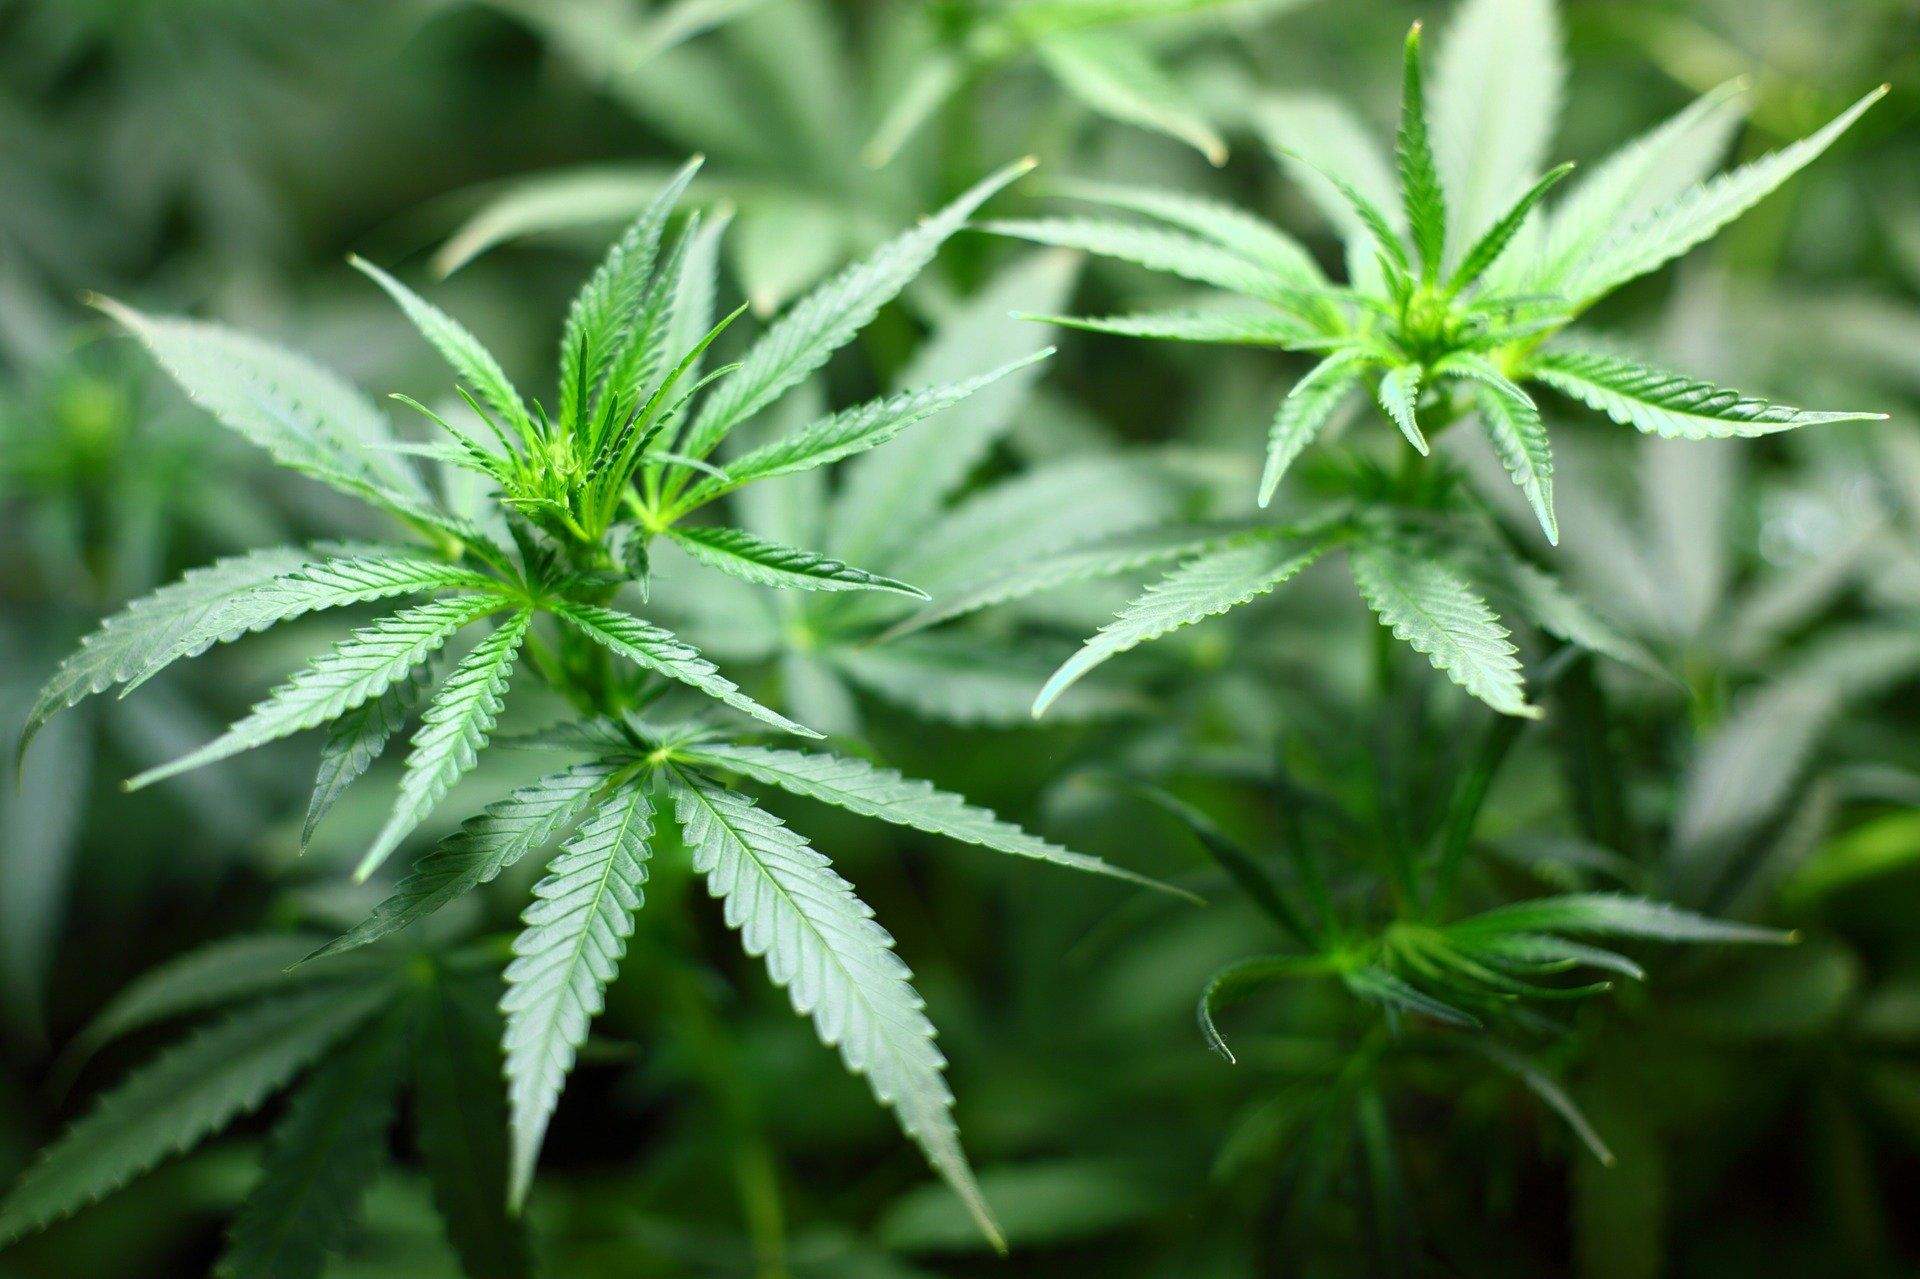 Peste 200 de plante de cannabis, confiscate în 3 județe din țară. Ofițerii DIICOT au deschis proces verbal / FOTO